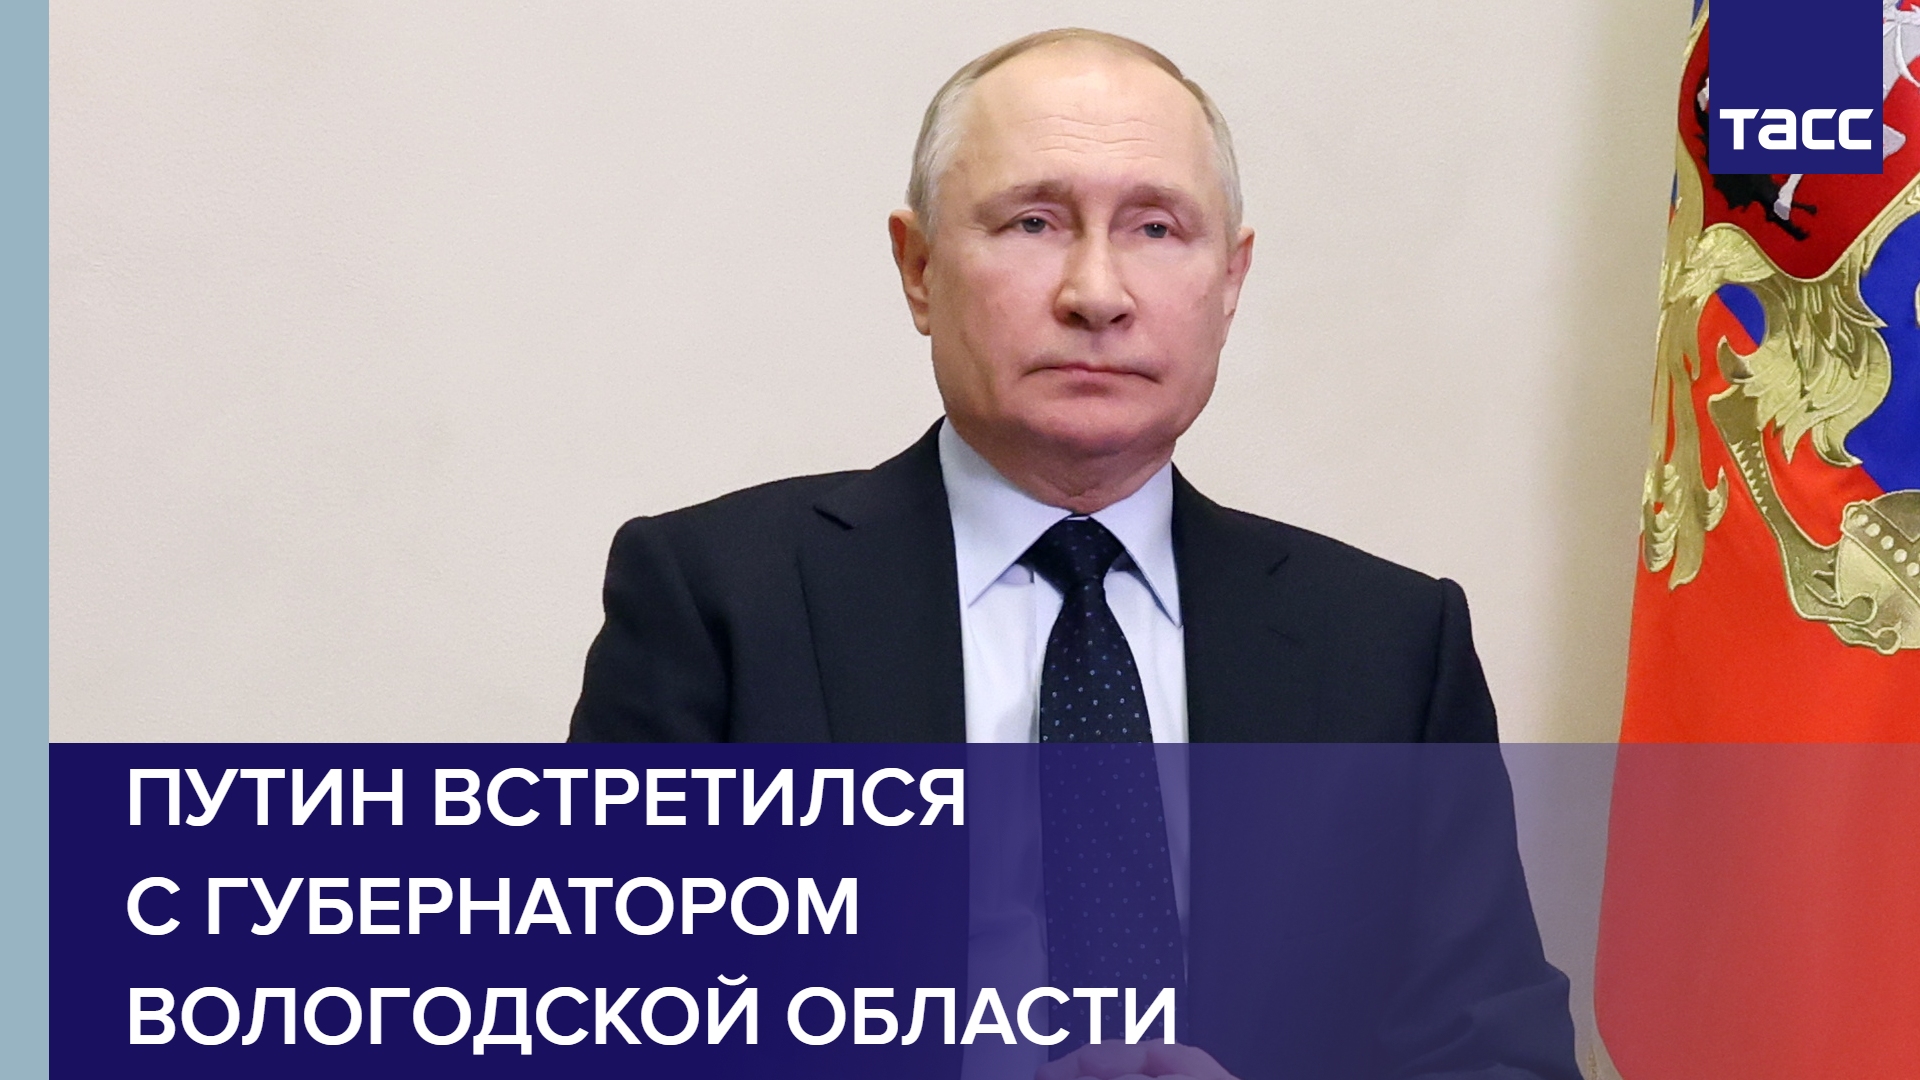 Путин встретился с губернатором Вологодской области